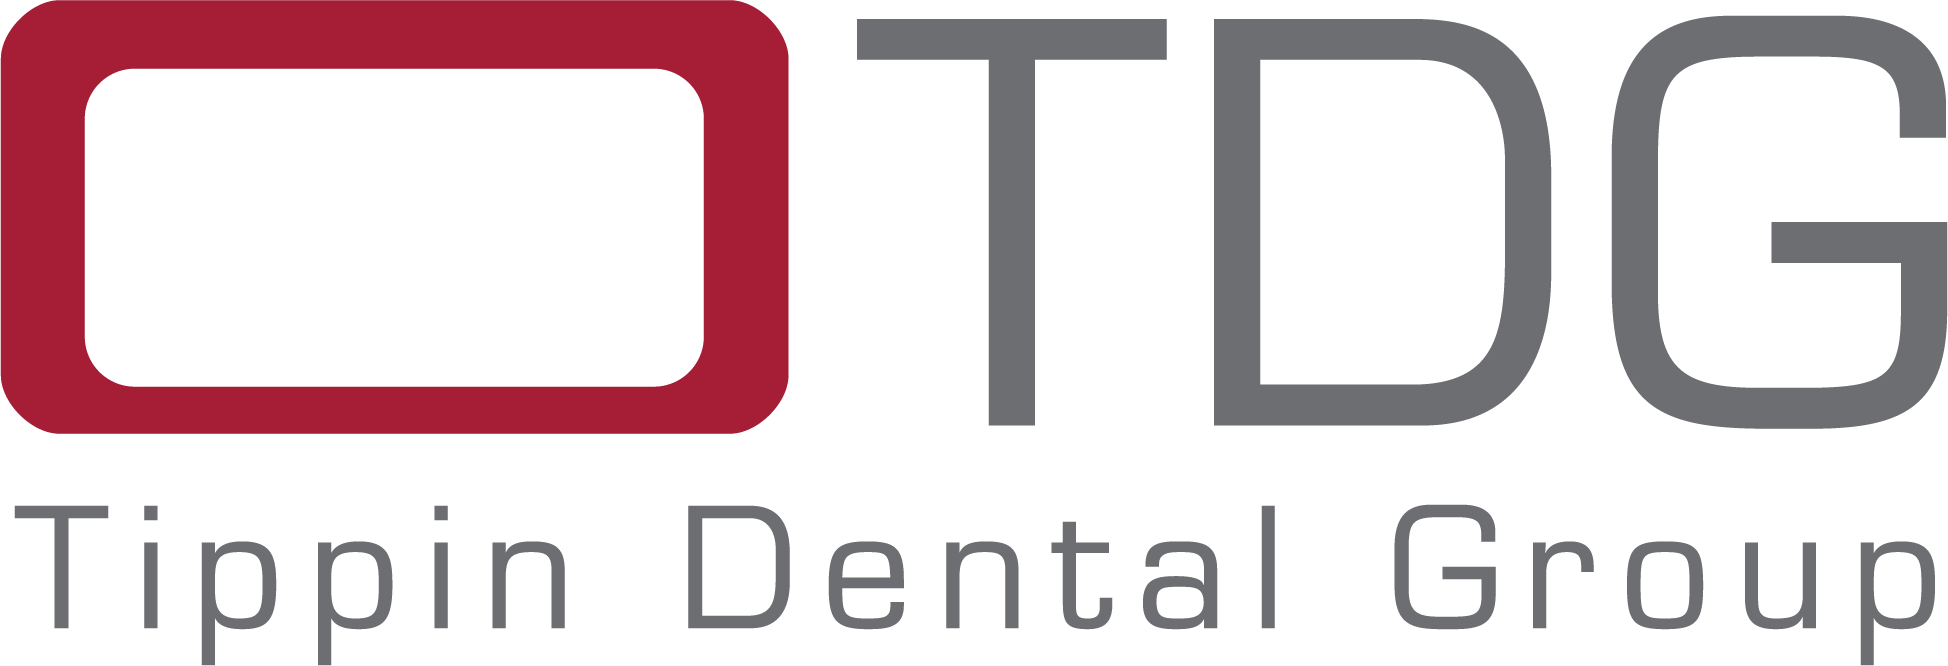 Tippin Dental Group - Tippin Dental Group (1948x666)